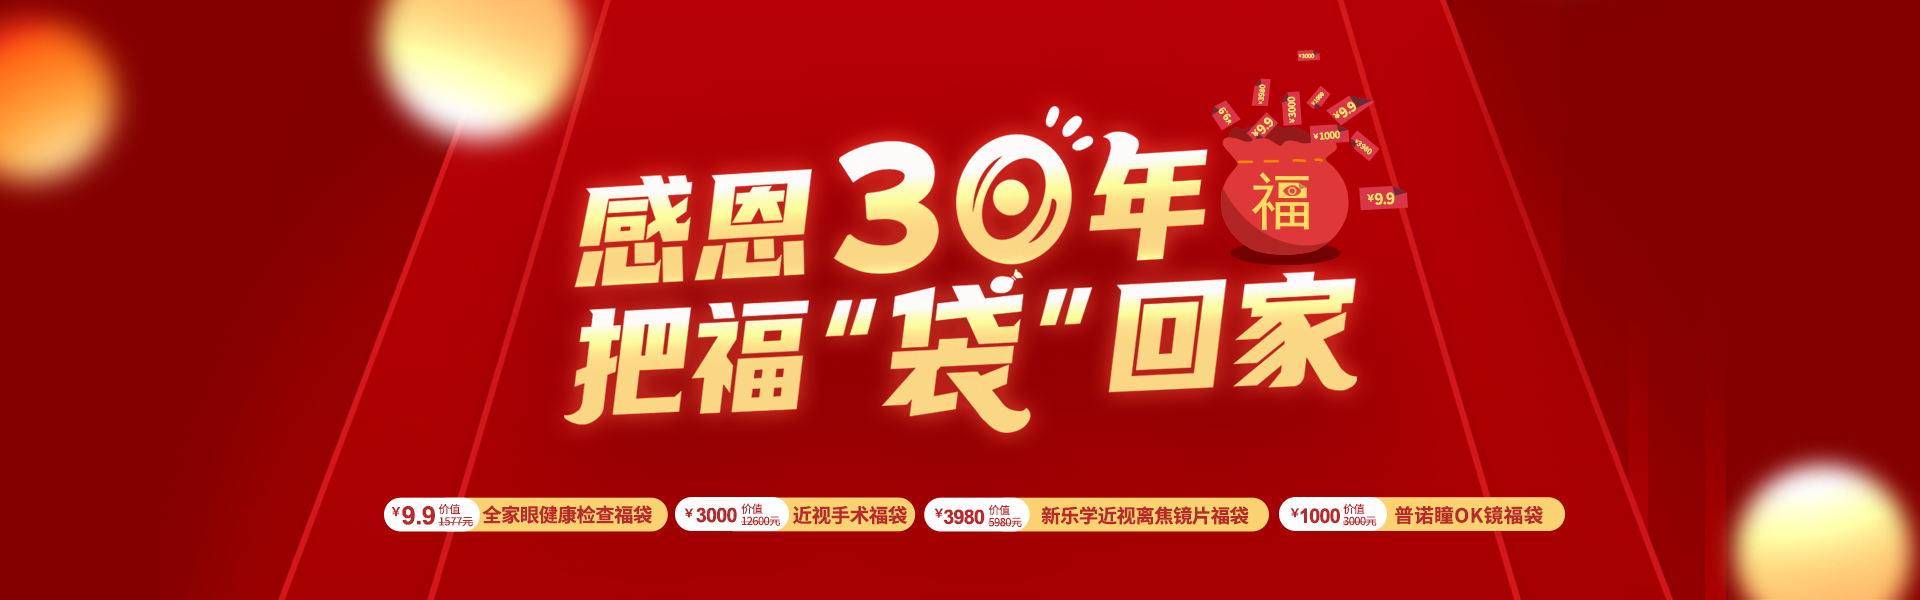 30周年banner